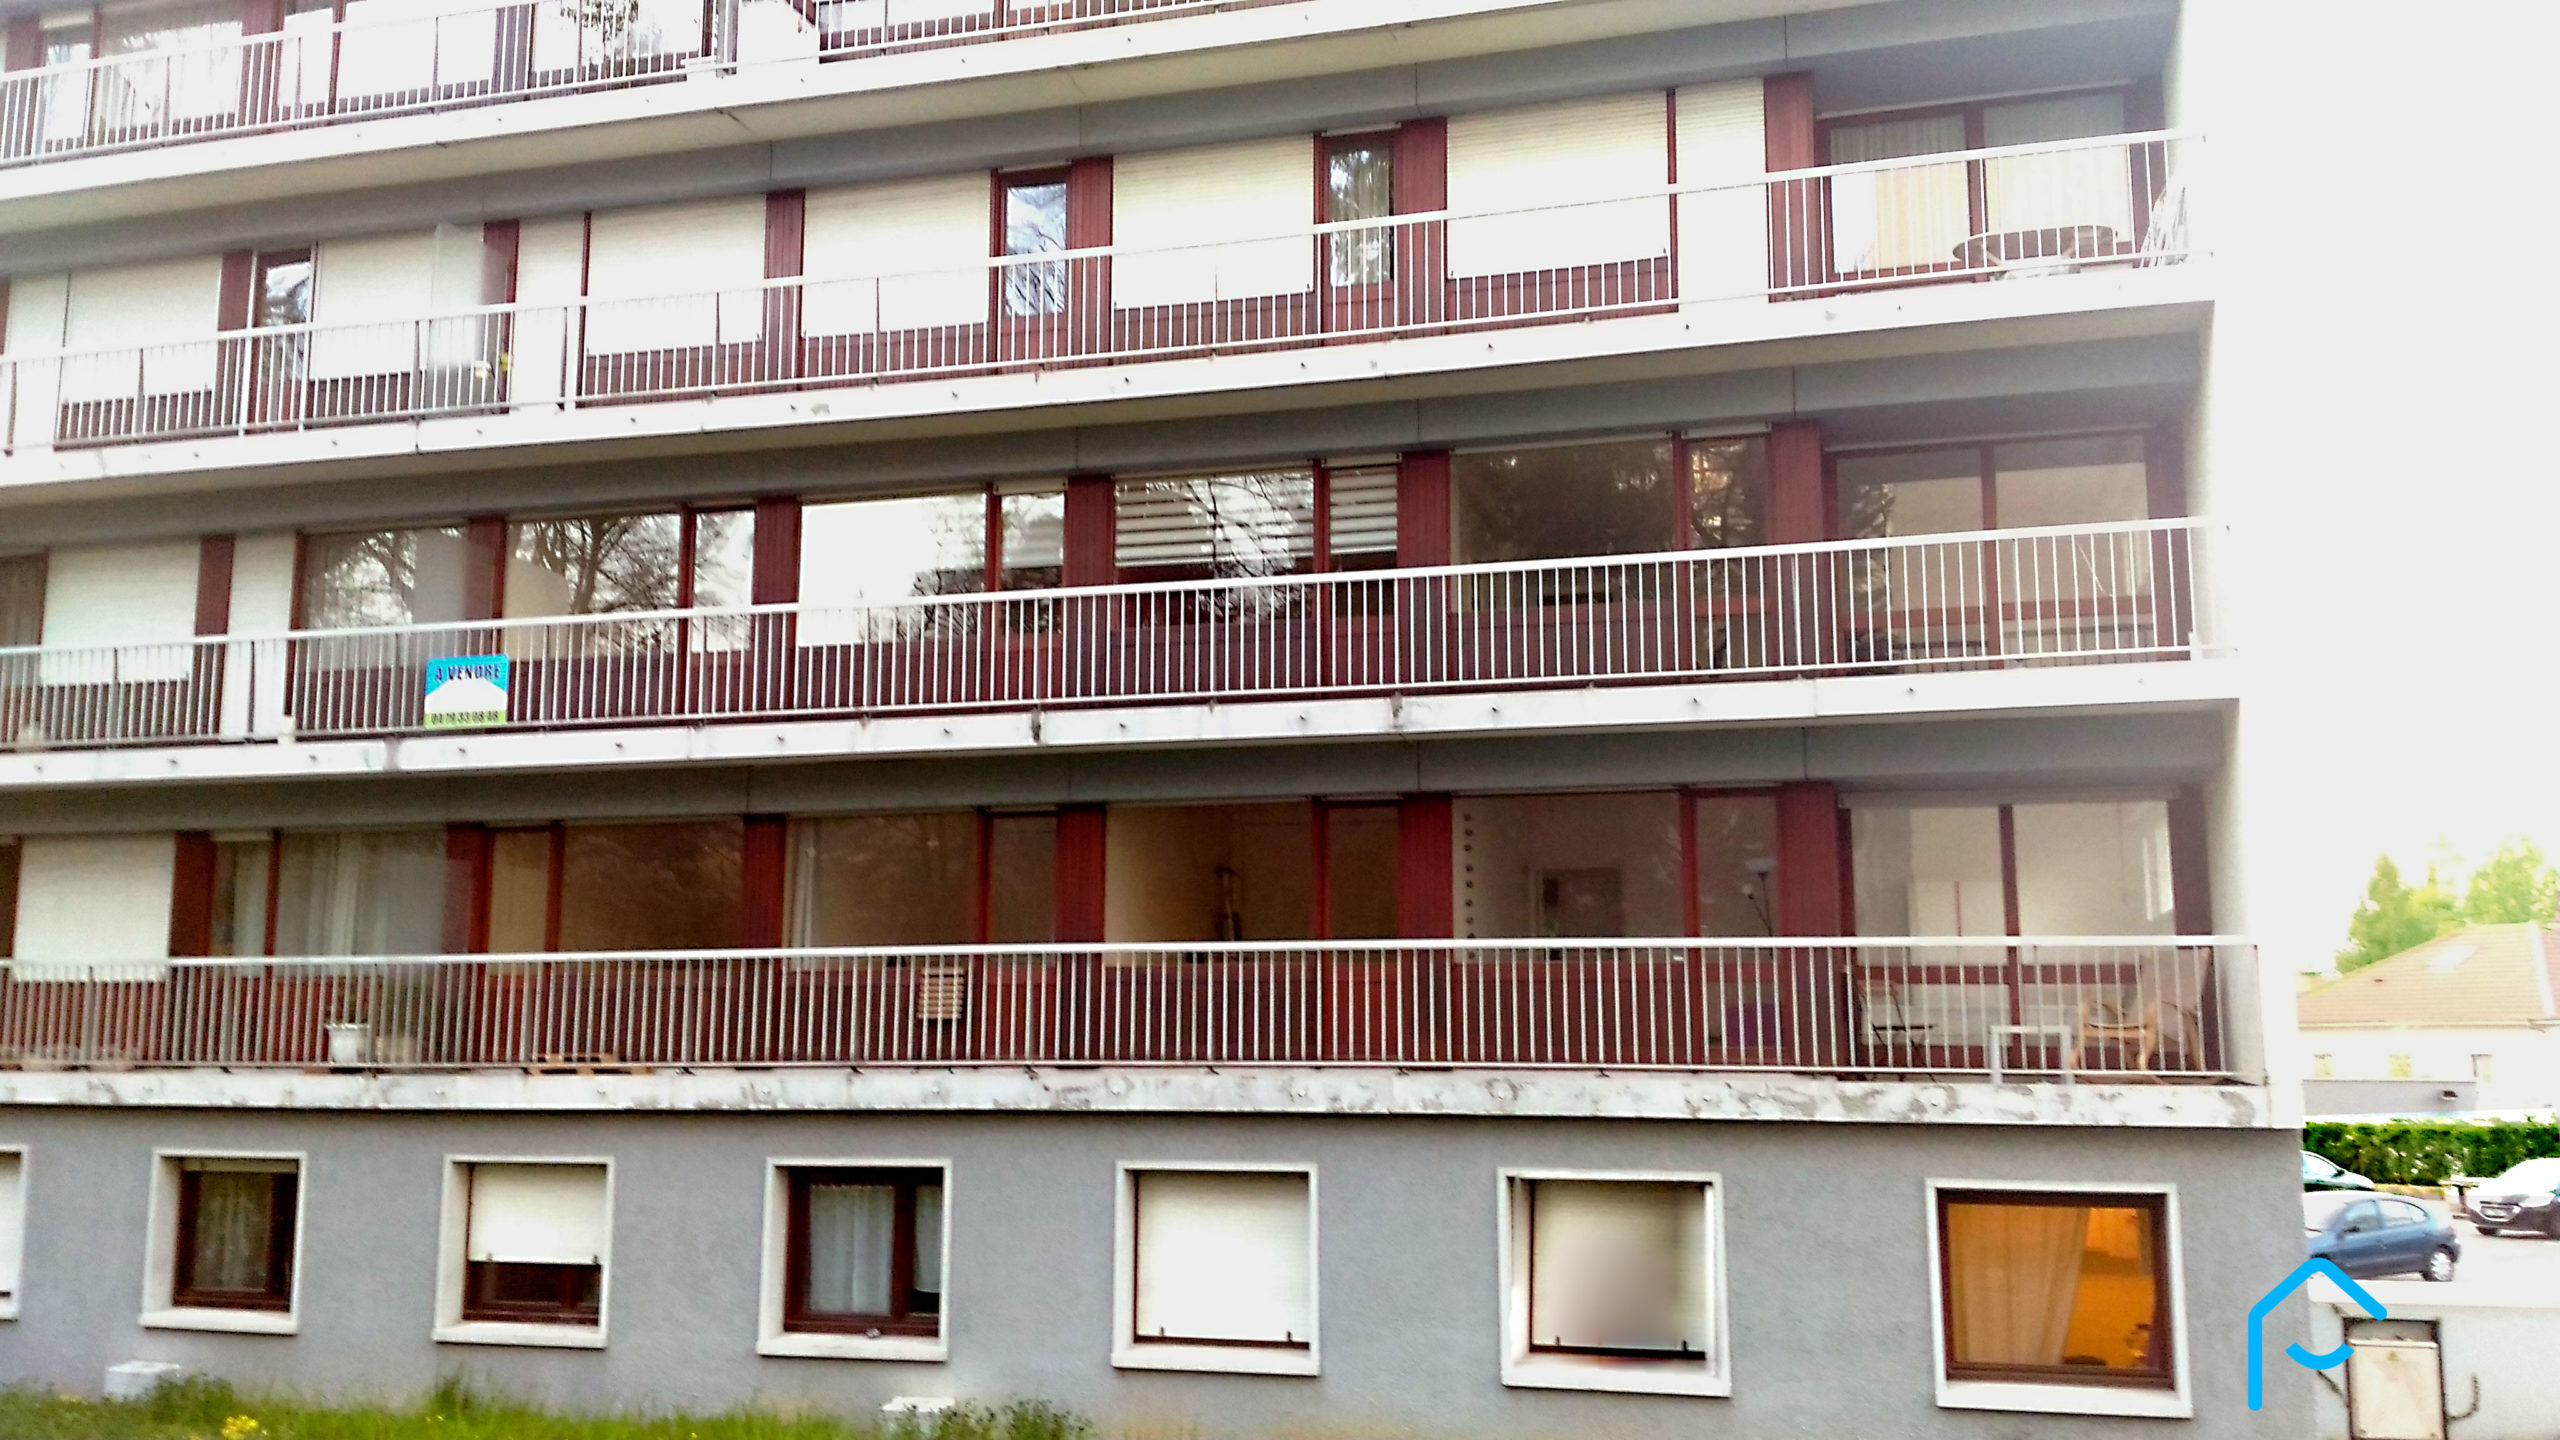 Vente appartement type T4 commune de Jacob Bellecombette 240 000 € proximité Chambéry